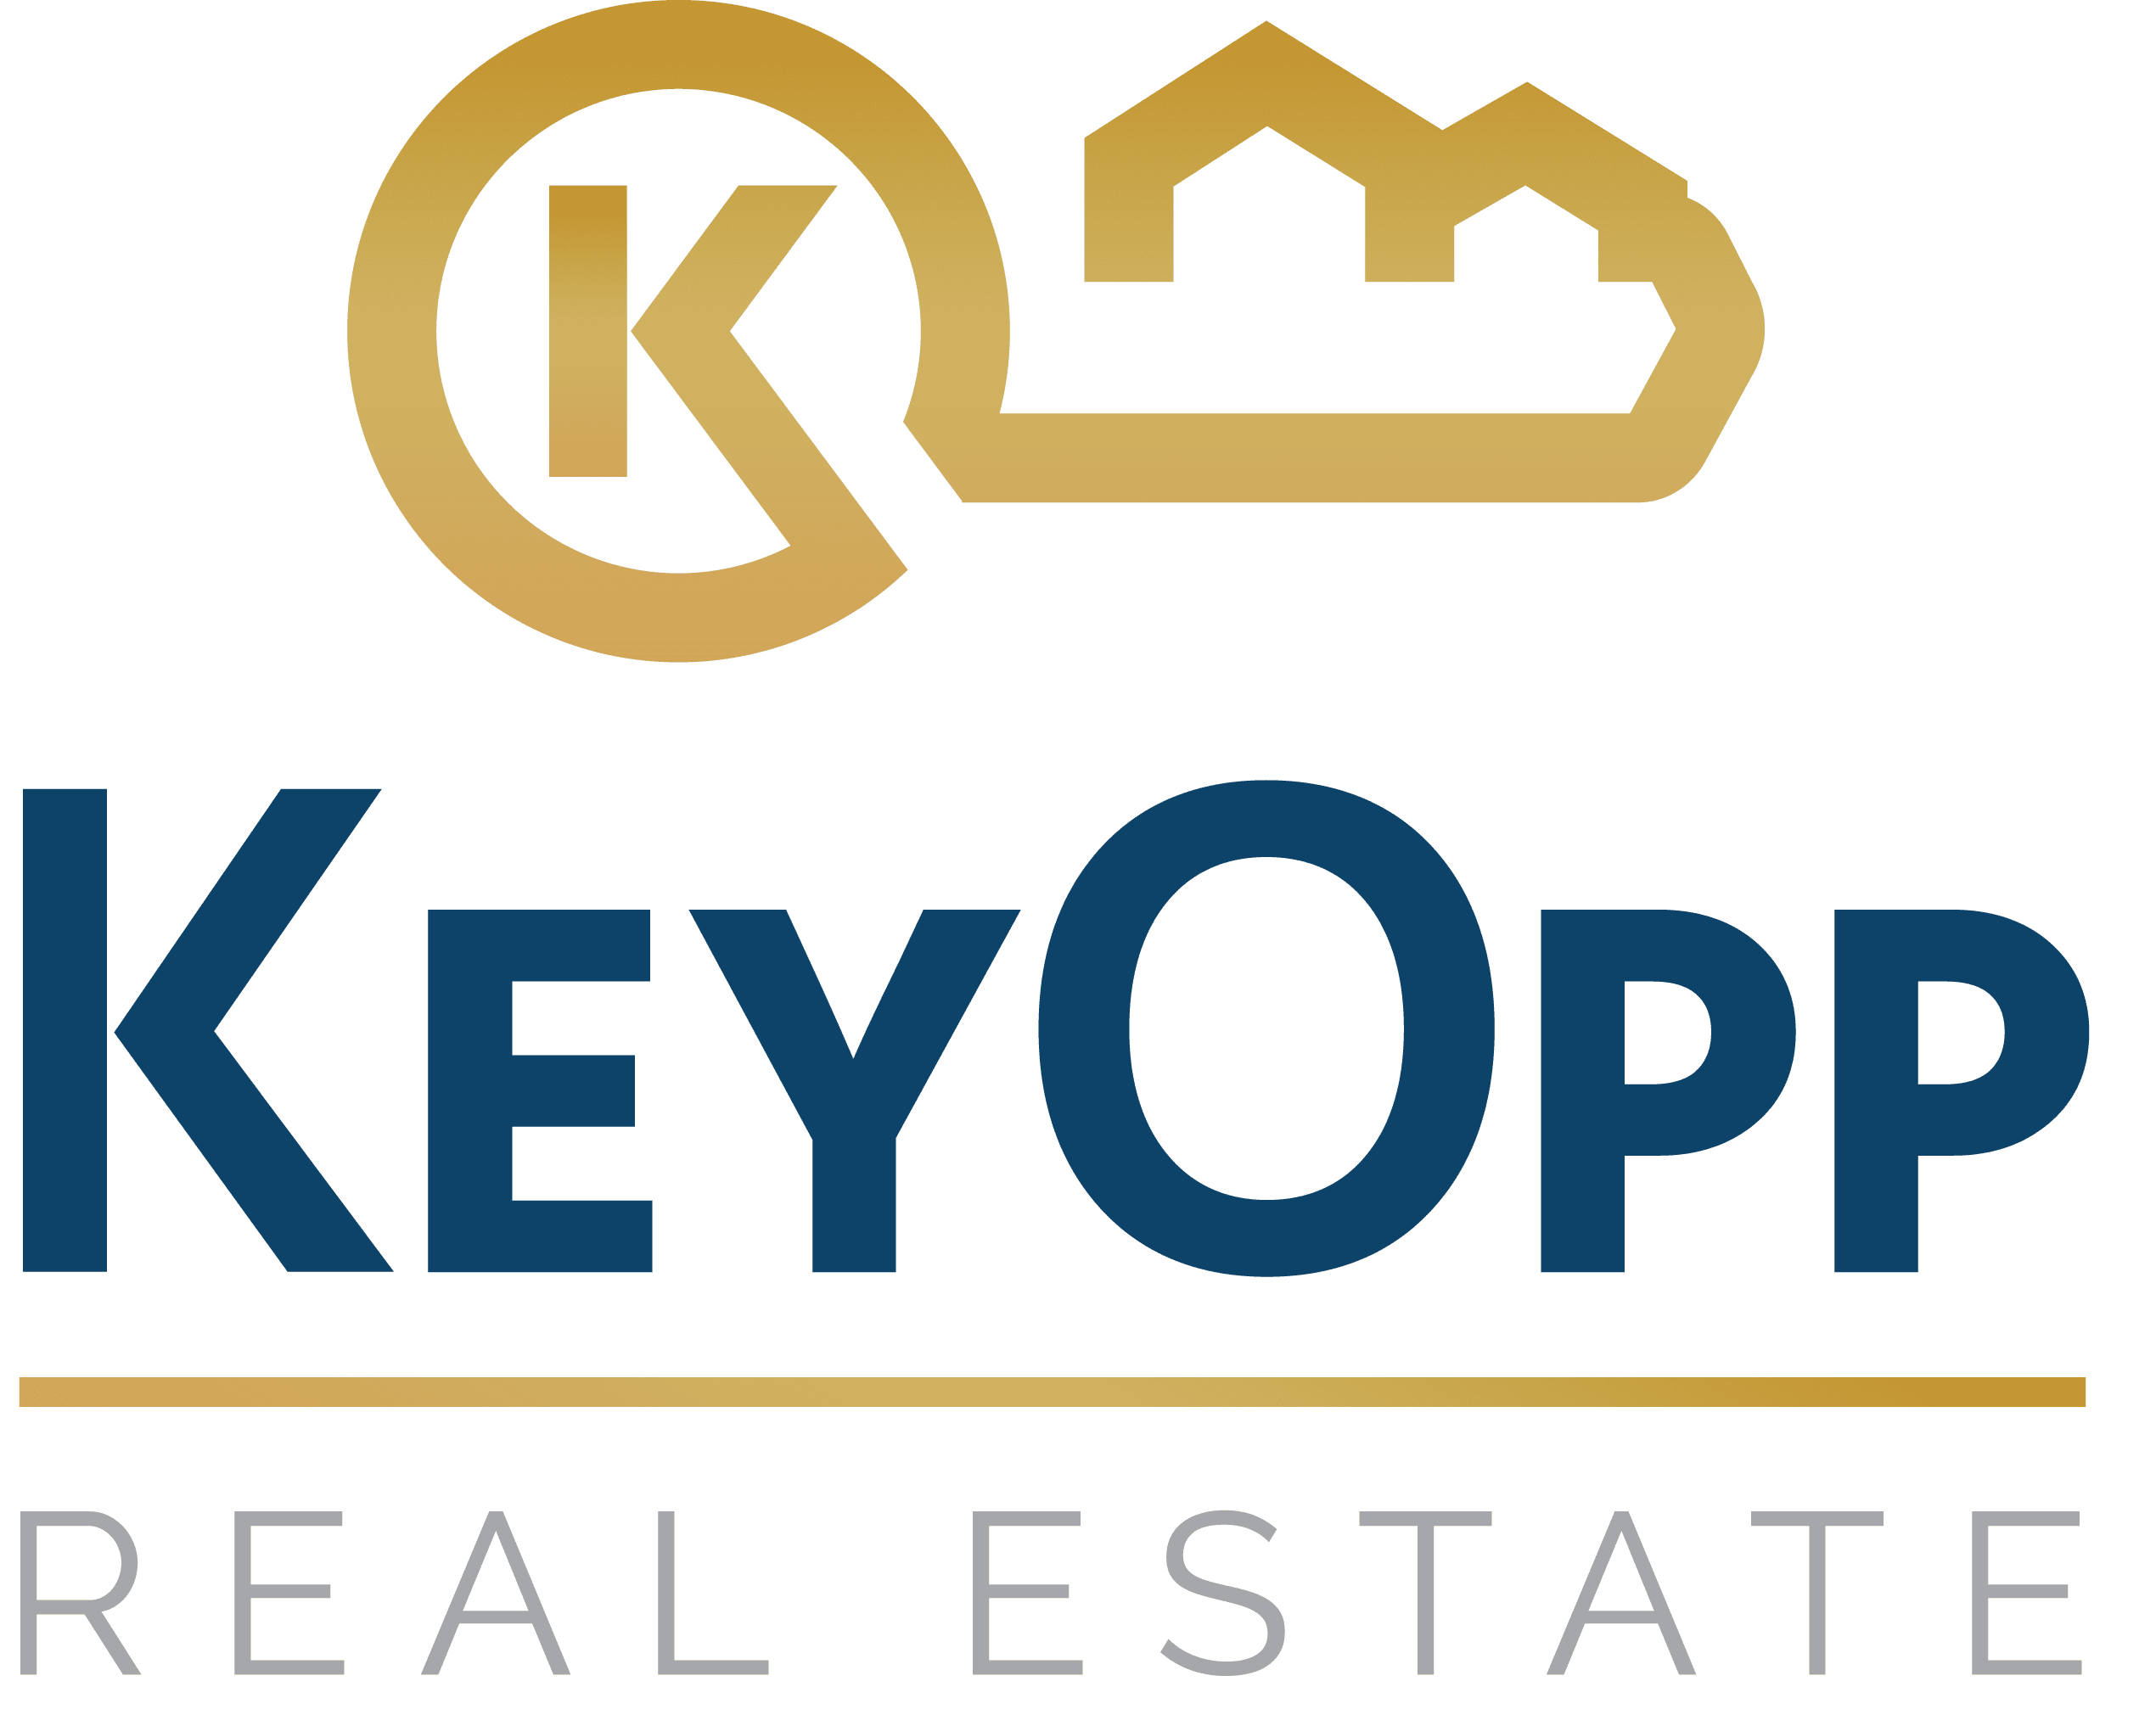 KeyOpp Real Estate